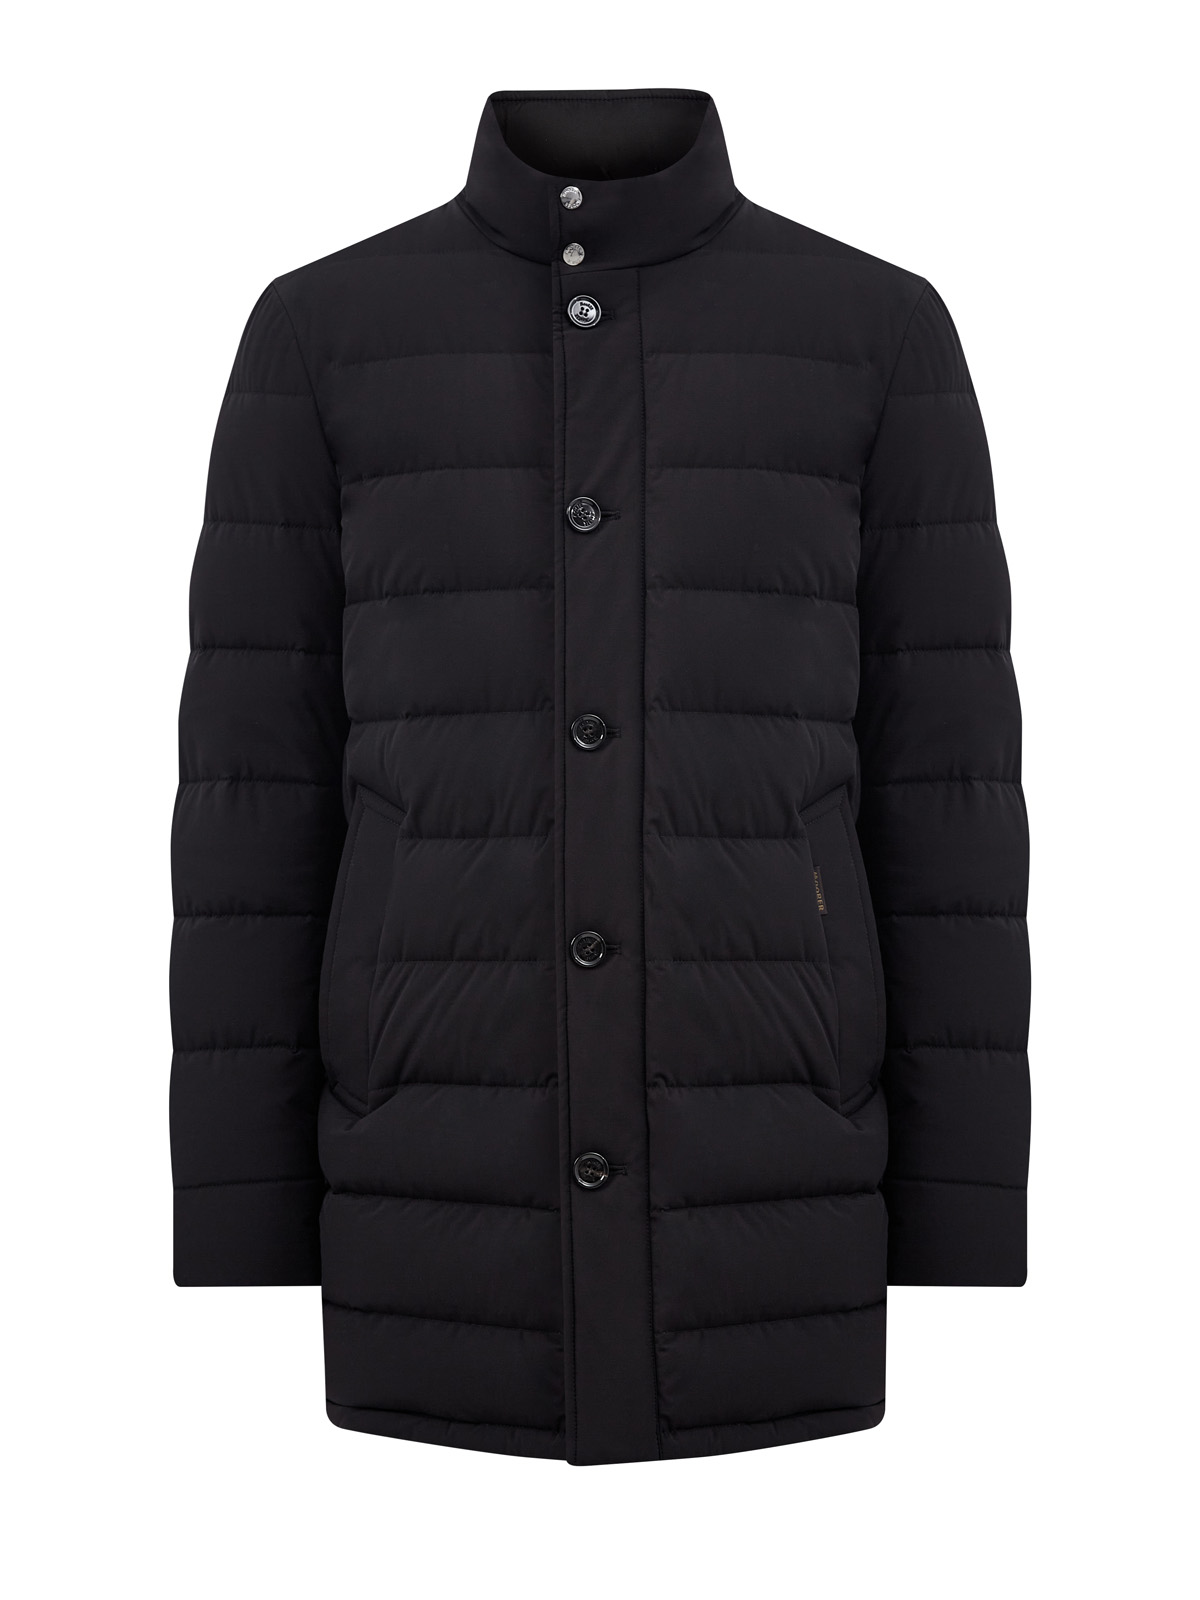 Пуховое пальто со съемным жилетом из стеганого нейлона MOORER, цвет черный, размер 52;54;56;58